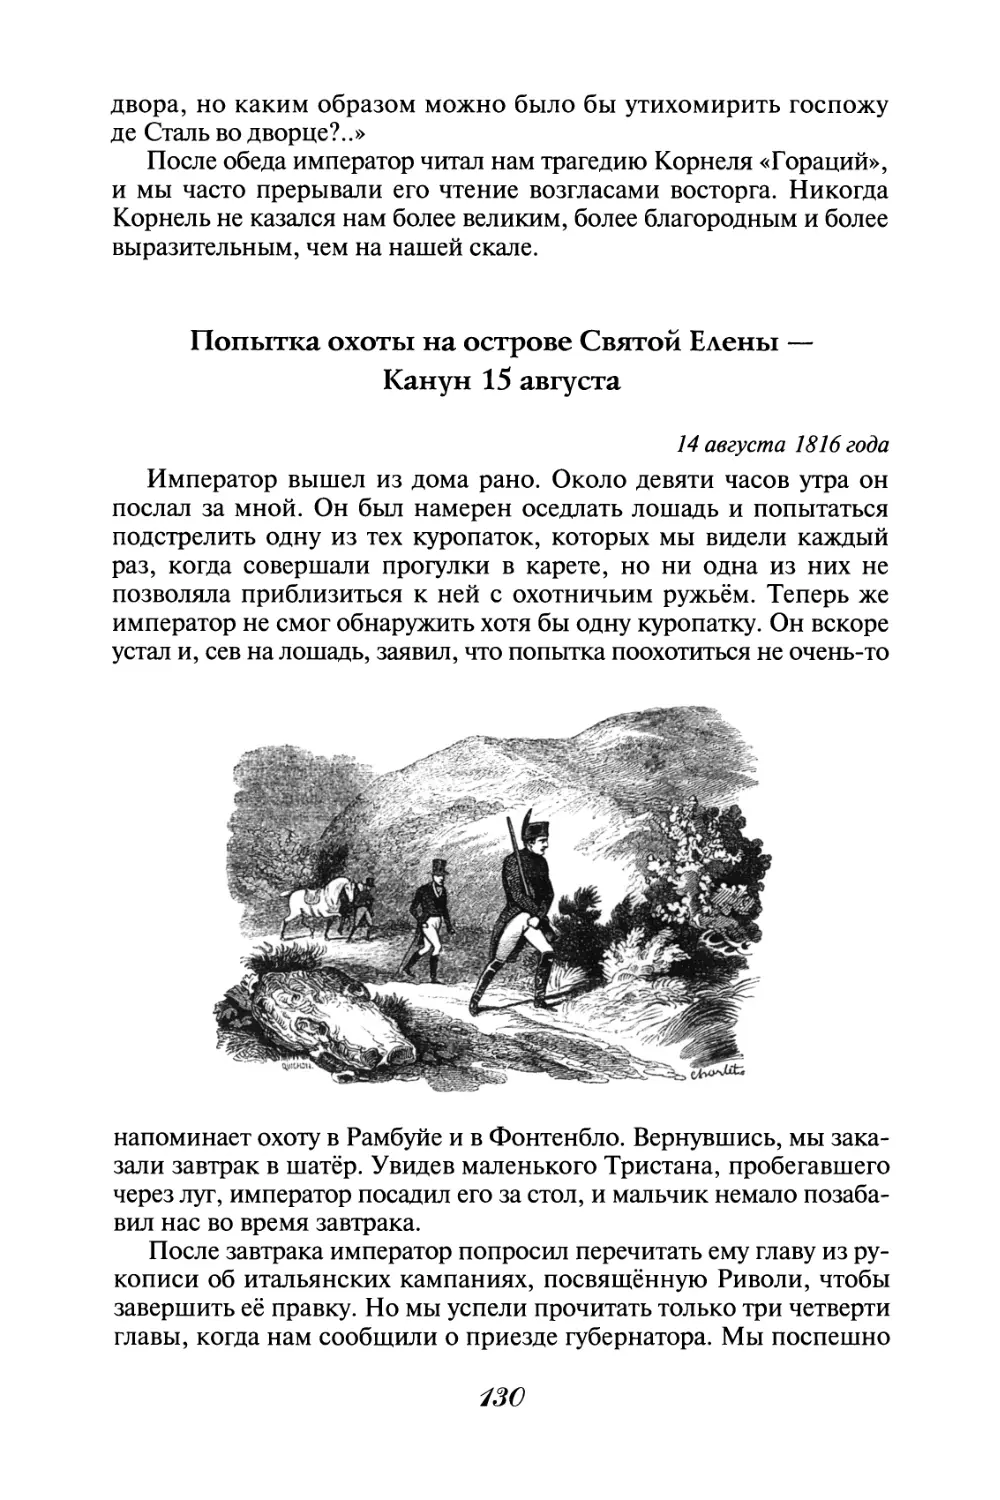 Попытка охоты на острове Святой Елены - Канун 15 августа 14 августа 1816 года